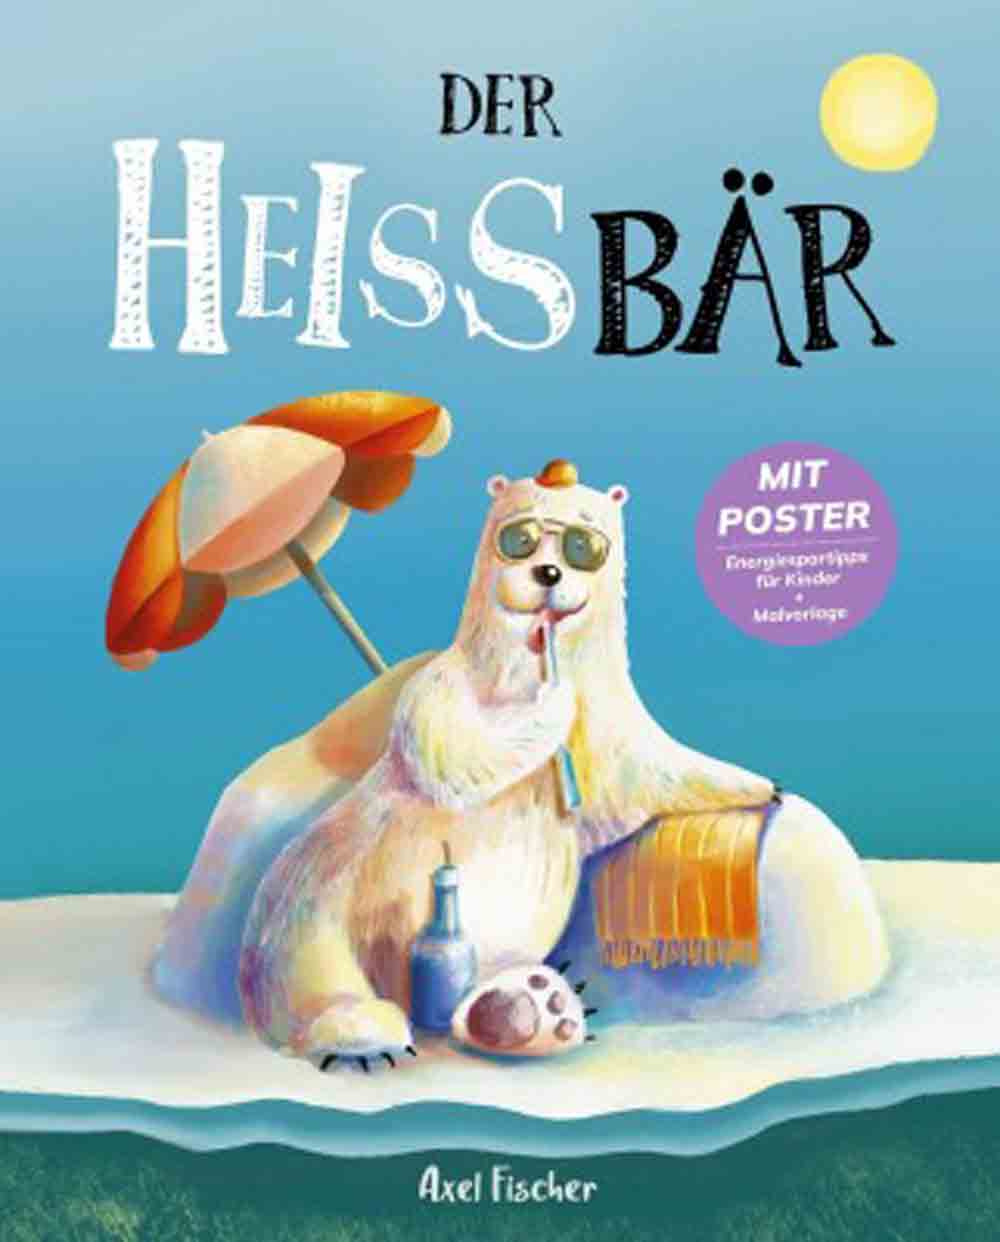 Der Heißbär, dieses Buch möchte die Welt retten: Schlagerstar Axel Fischer veröffentlicht Klima Kinderbuch